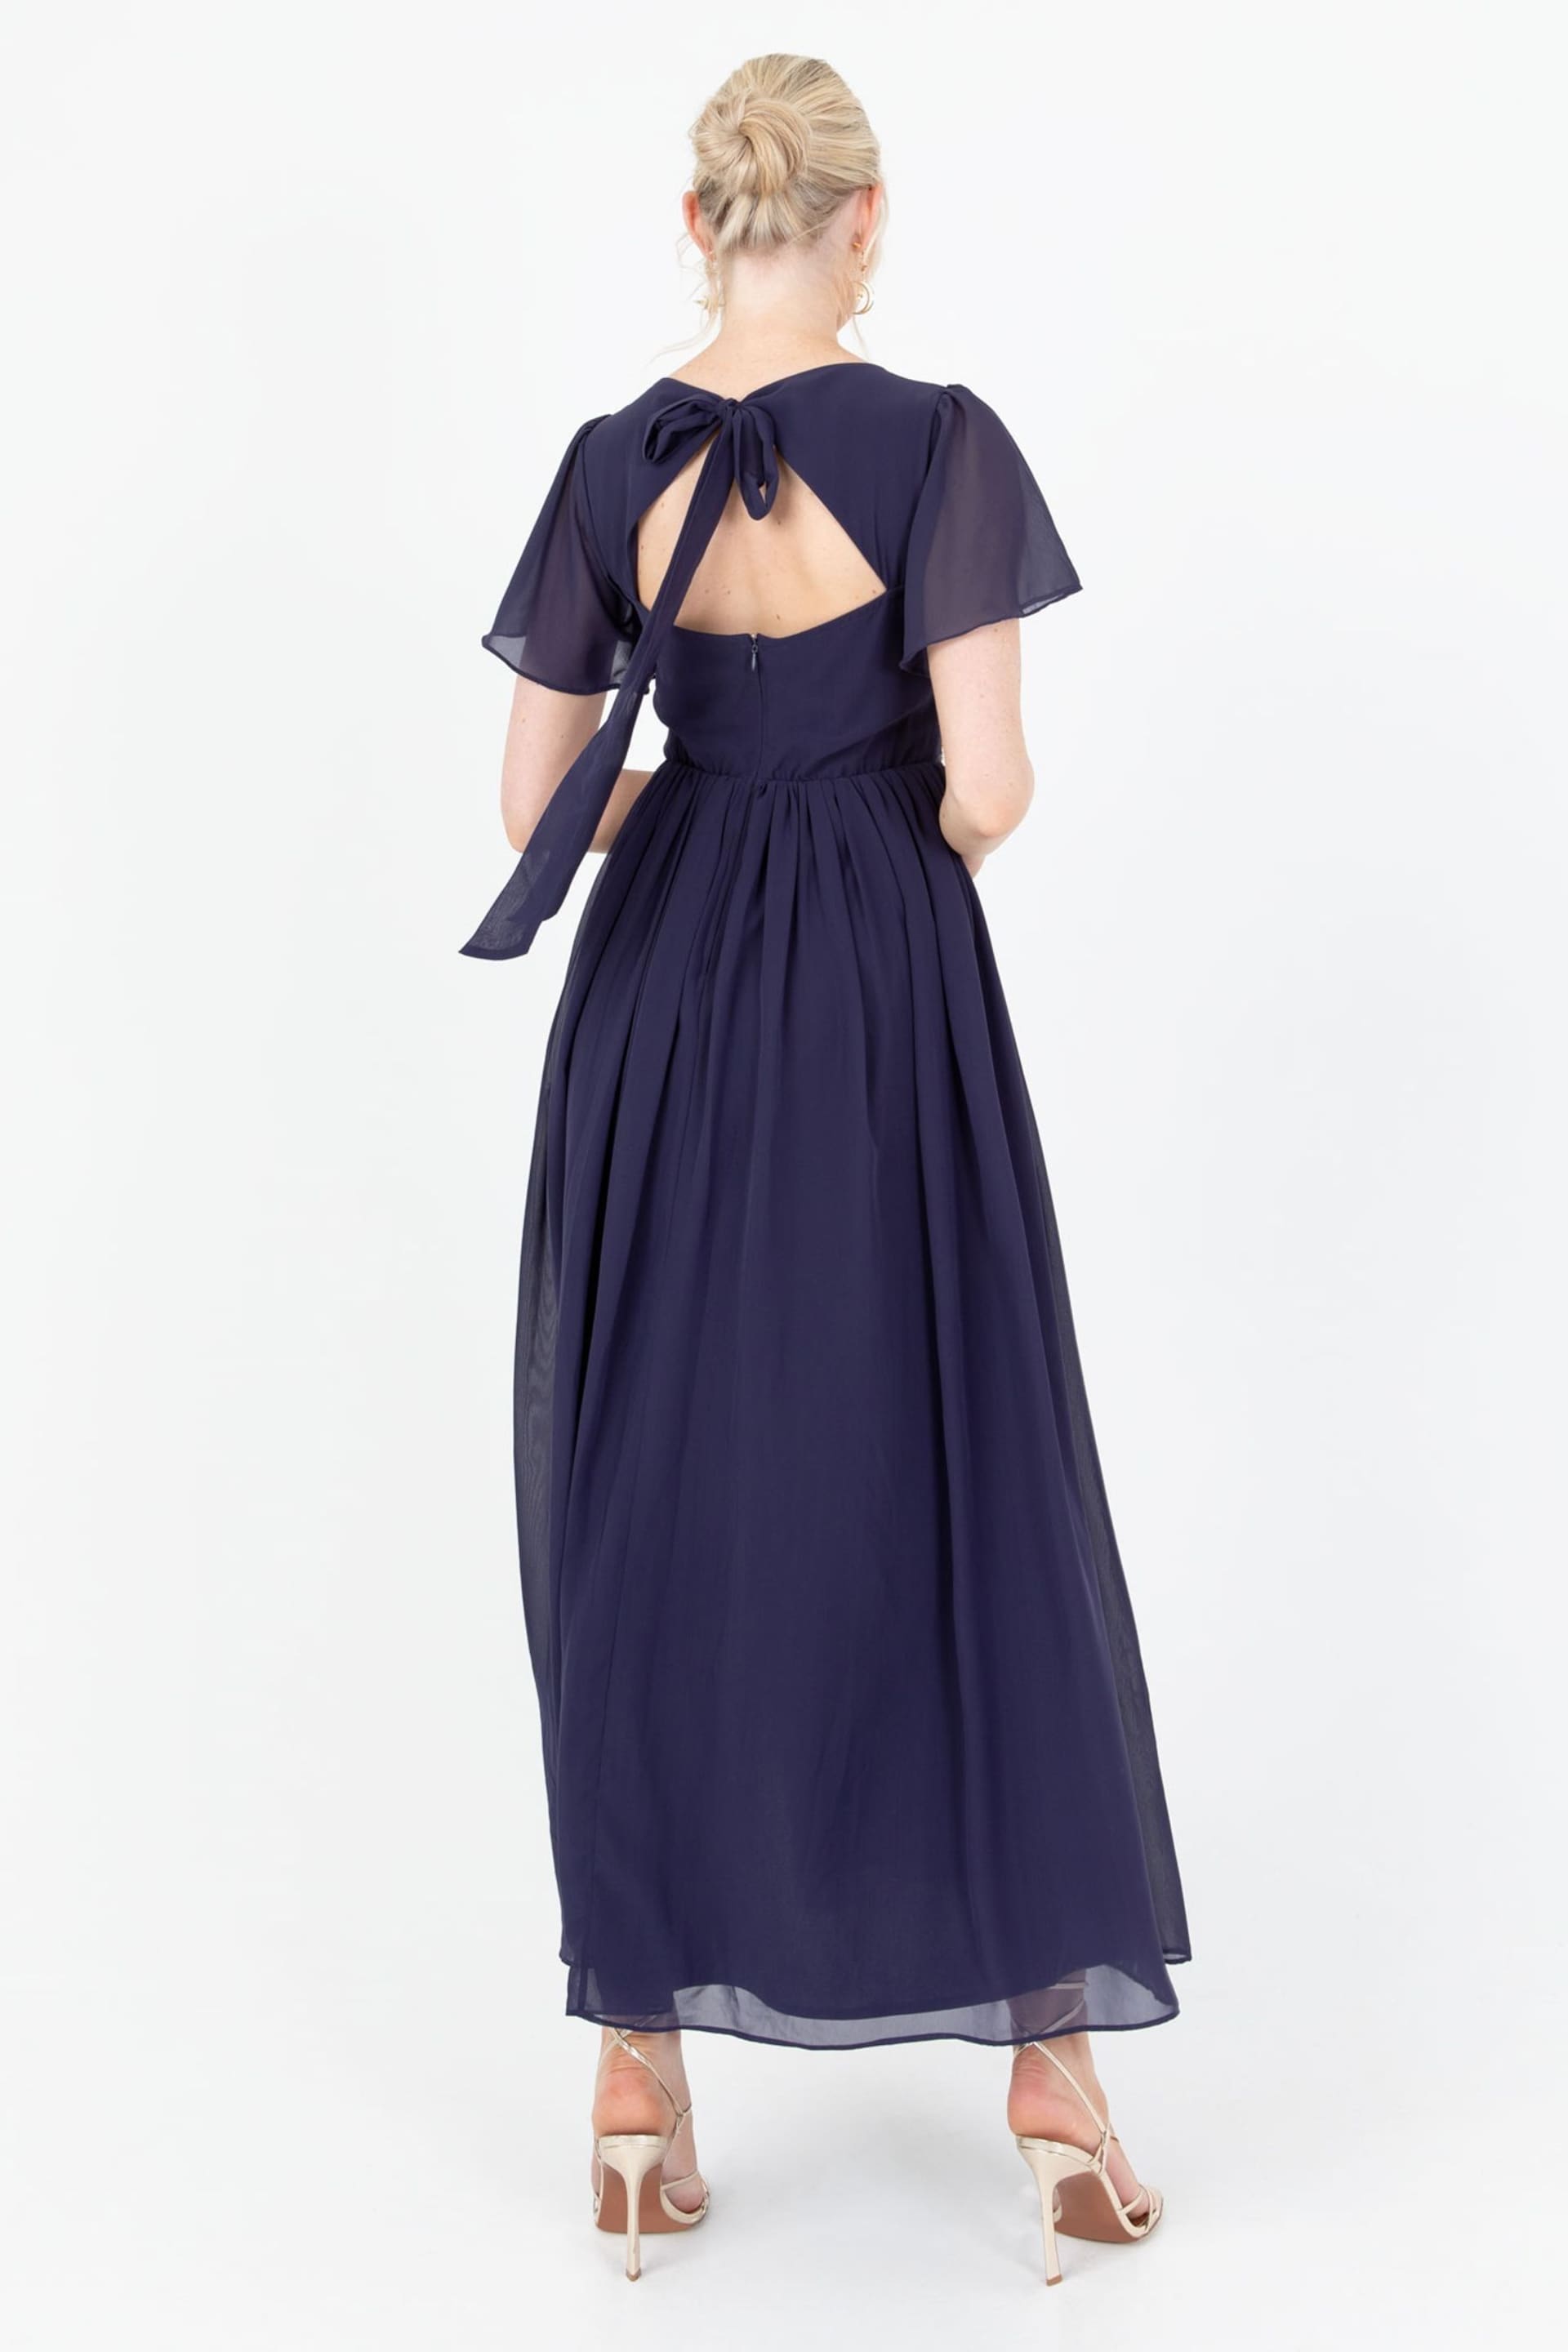 Lovedrobe Blue Star Embellished Split Front Maxi Dress - Image 2 of 5